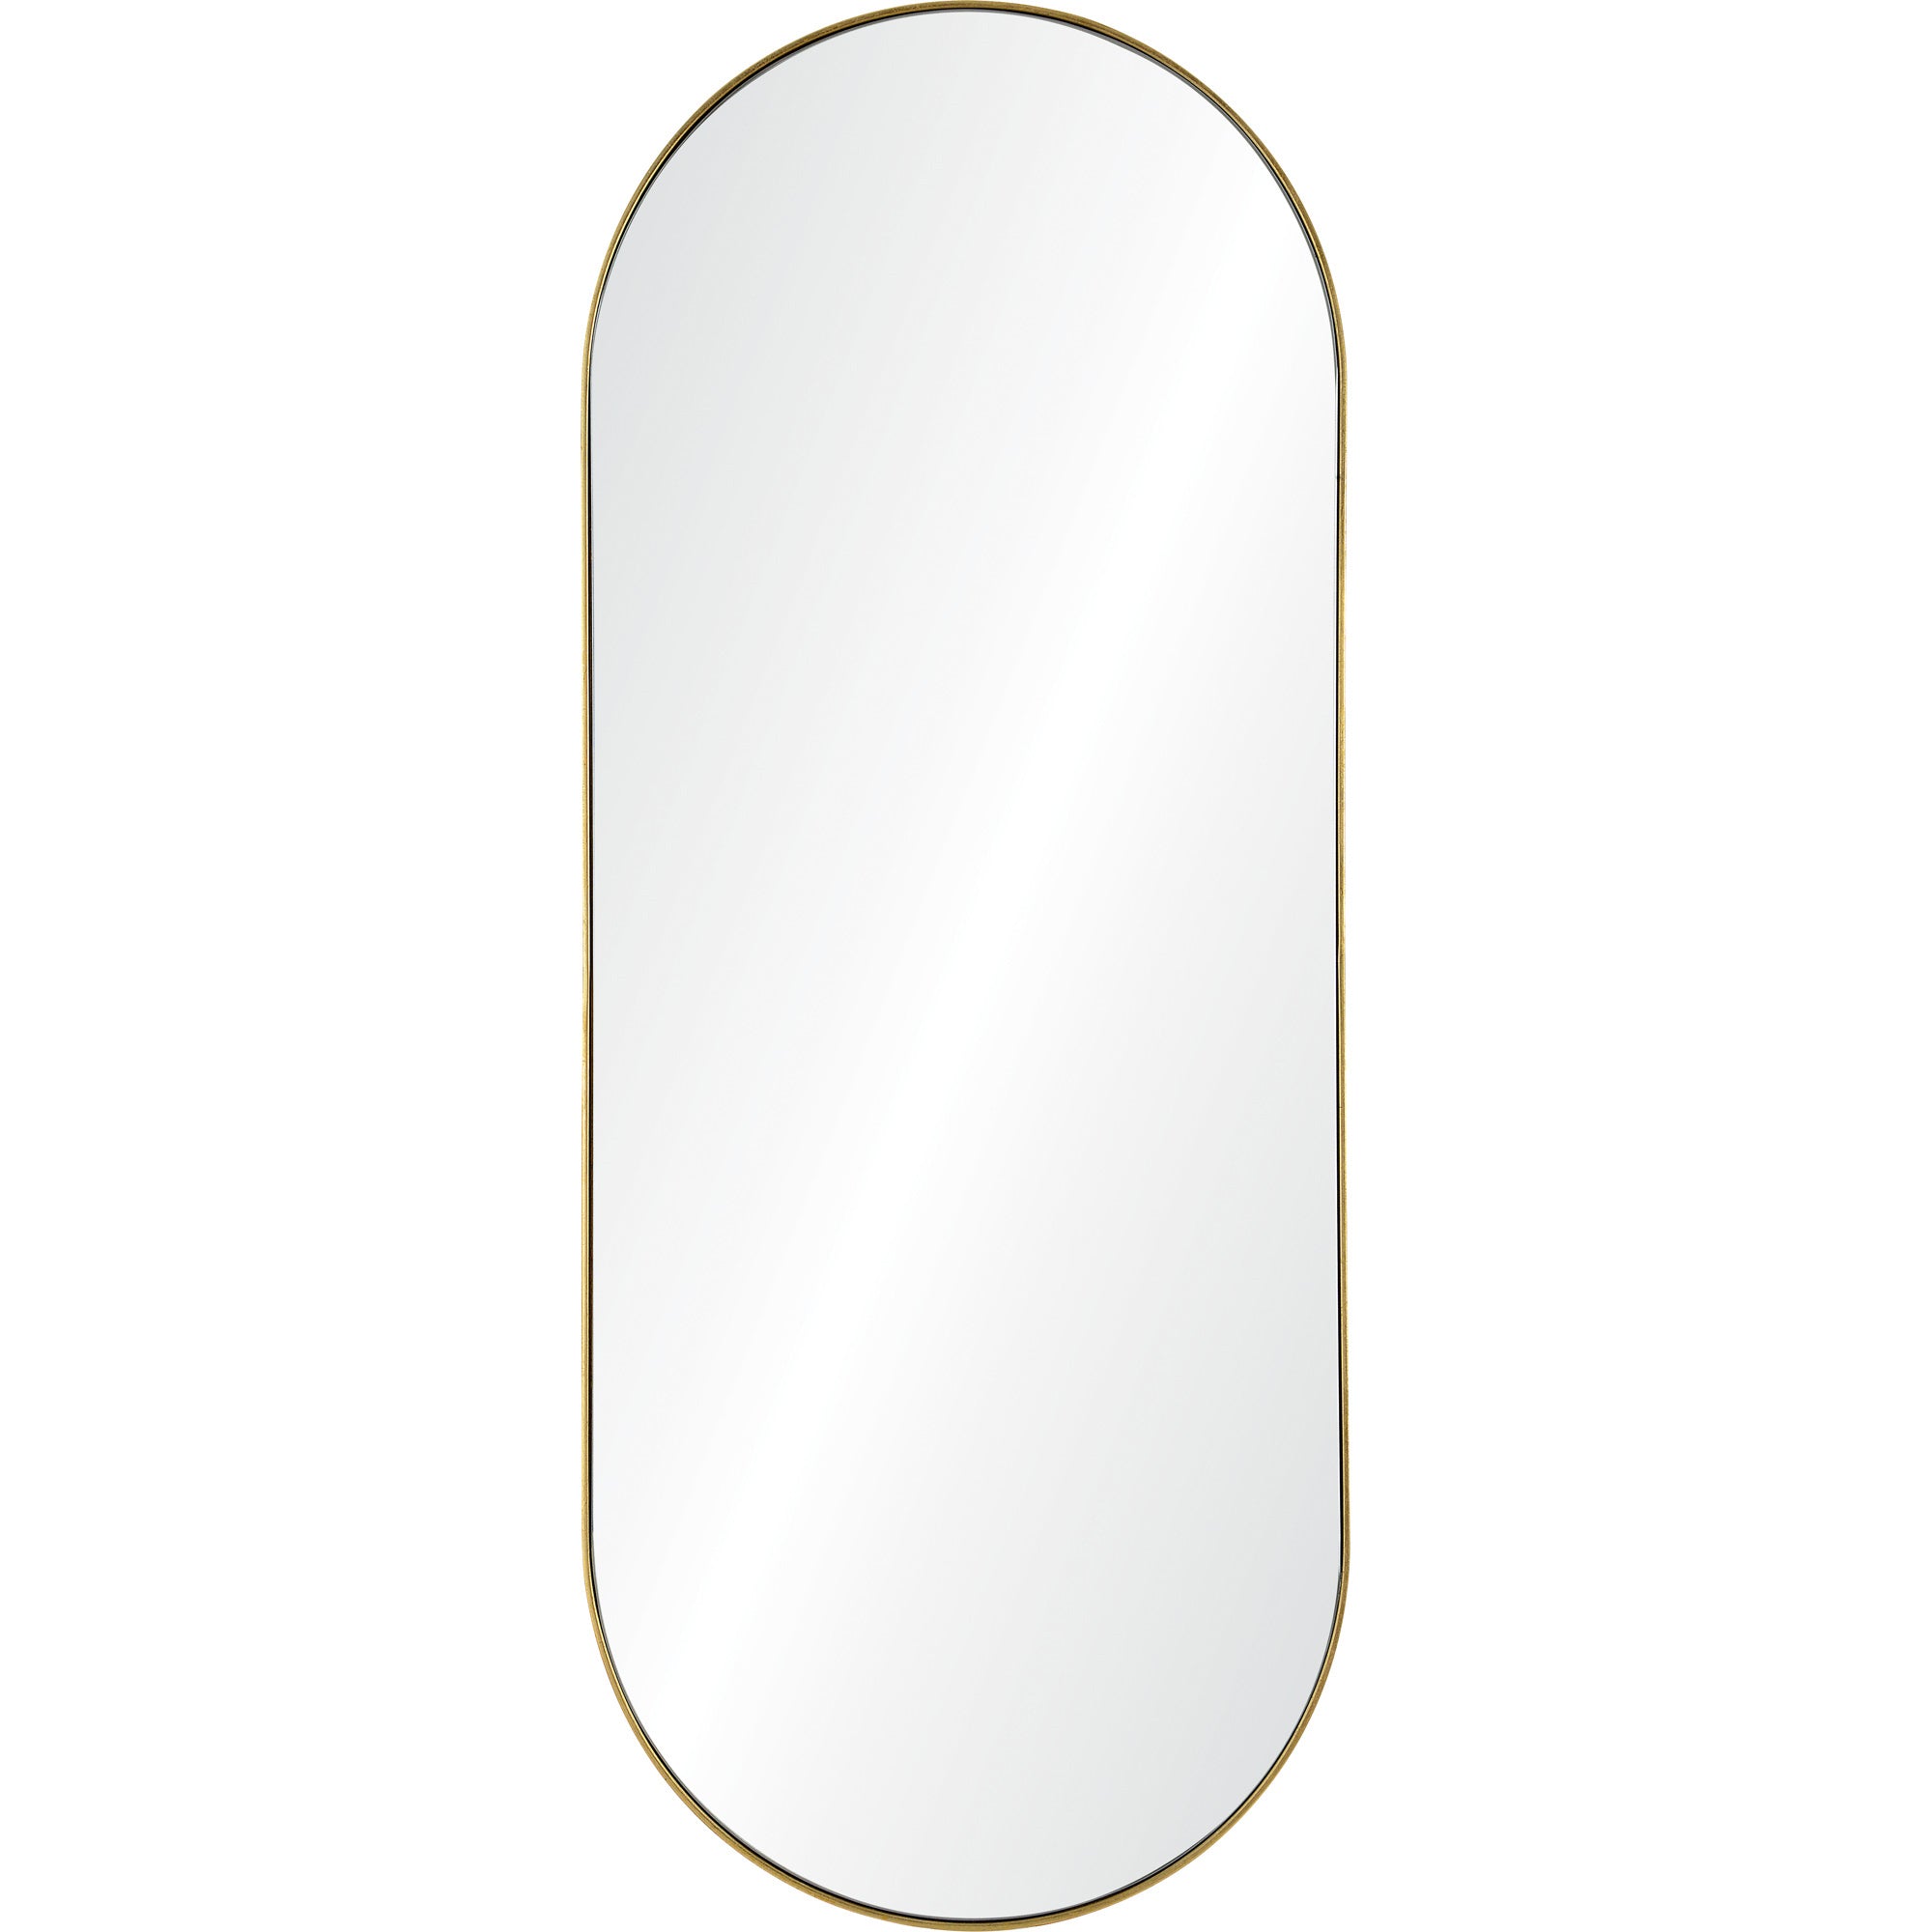 Marius 24" Iron - Gold Leaf Mirror